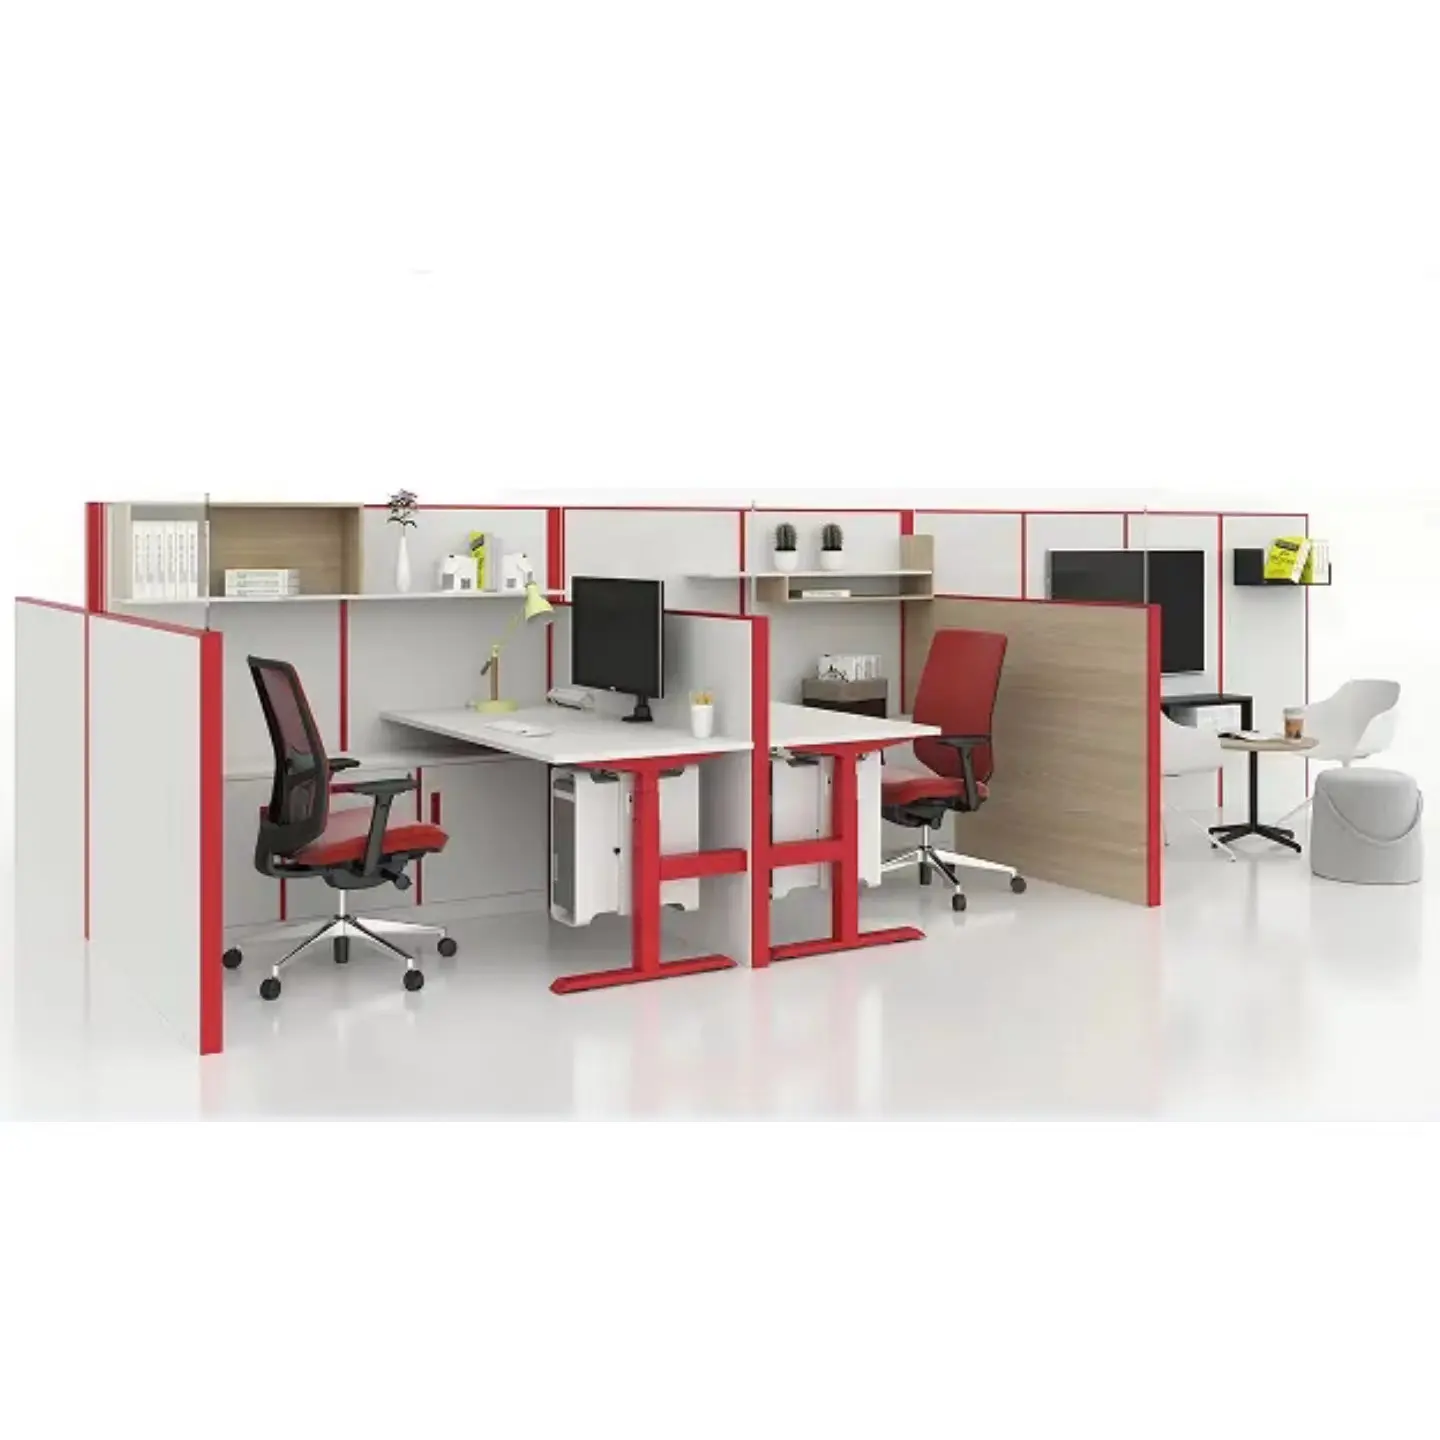 Muebles de oficina multifuncionales minimalistas modernos, dos etapas, doble motor, mesa de elevación ajustable, estación de oficina